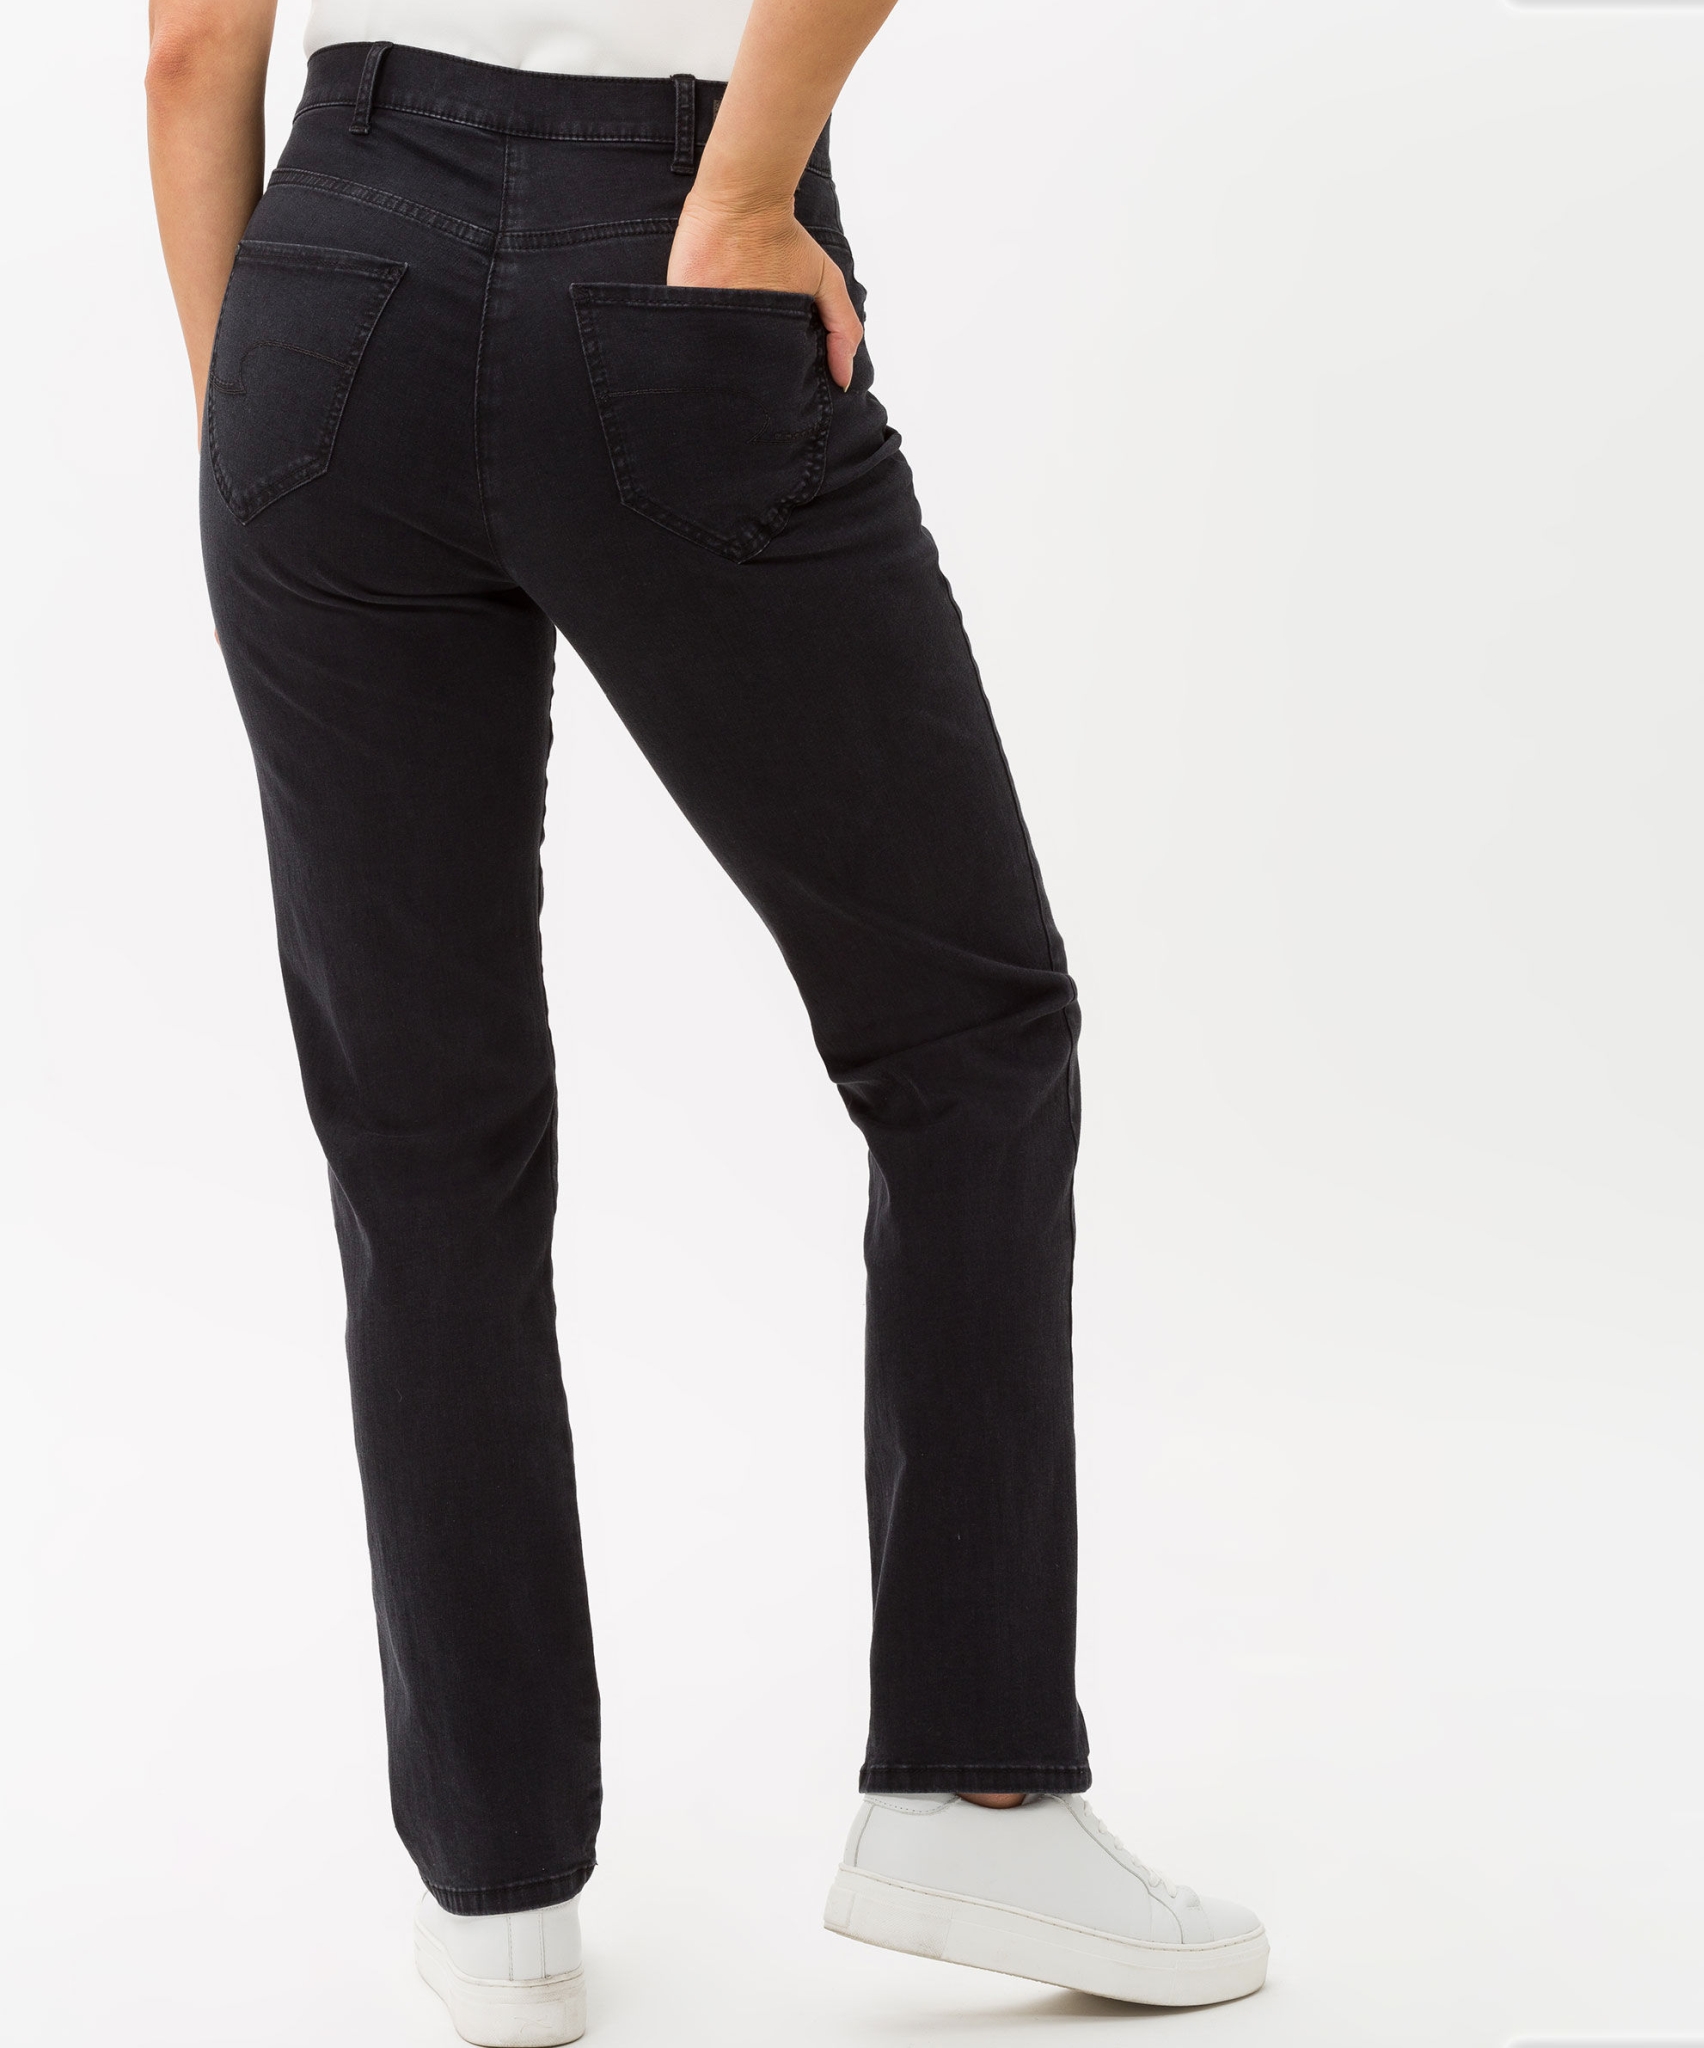 RAPHAELA BY BRAX Jeans in hochelastischer Dynamic-Qualität 10626976